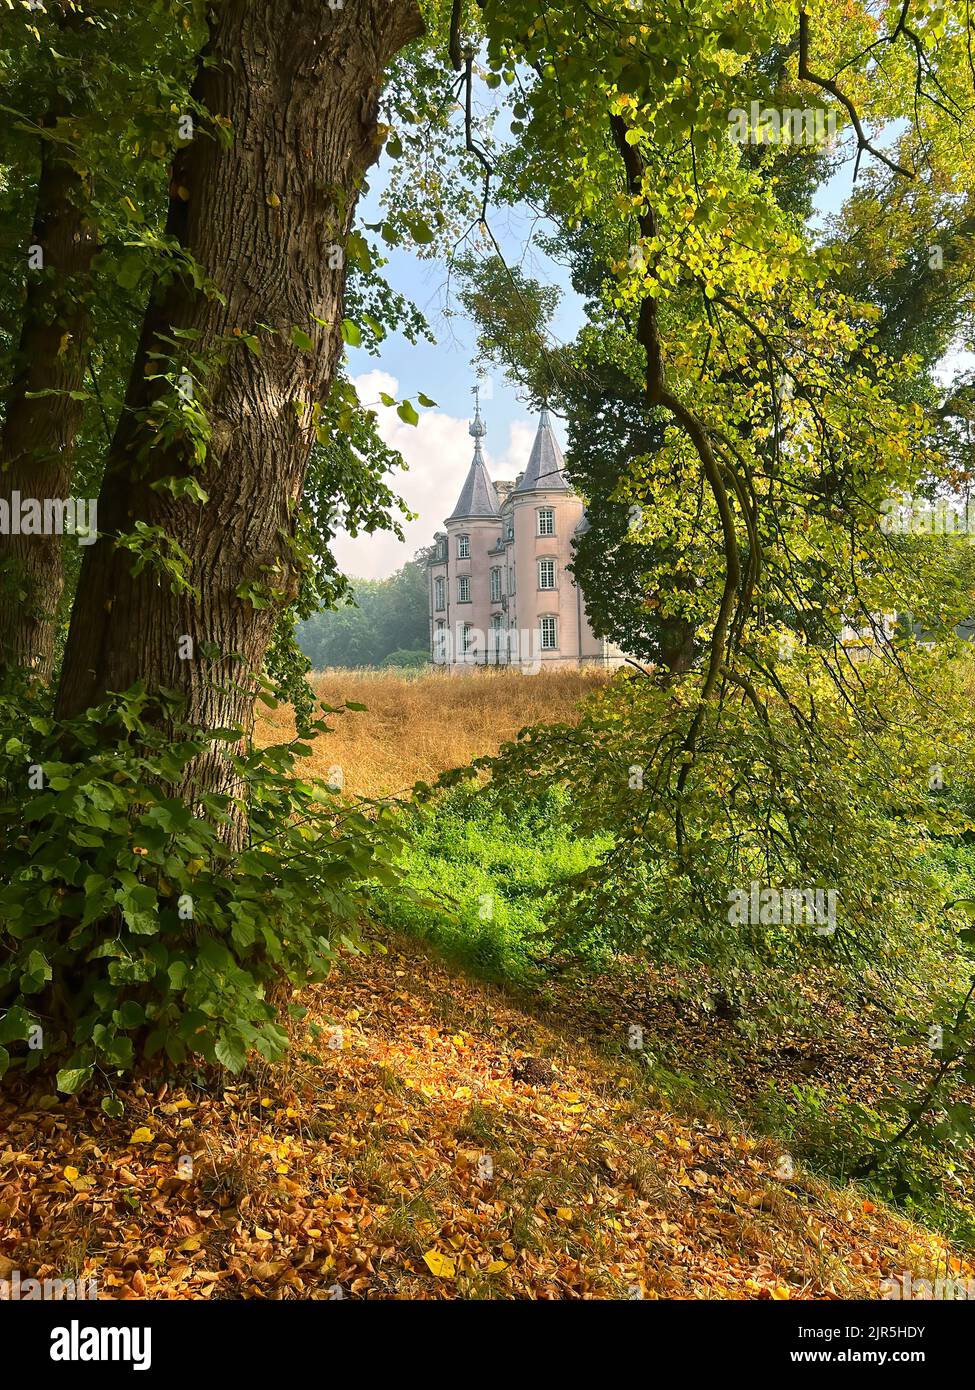 Vertikale farbenfrohe „Malerei – gleich“, aufgenommen auf dem historischen europäischen Schloss von Poeke, gesehen durch die überhängenden grünen Bäume und Blätter Stockfoto